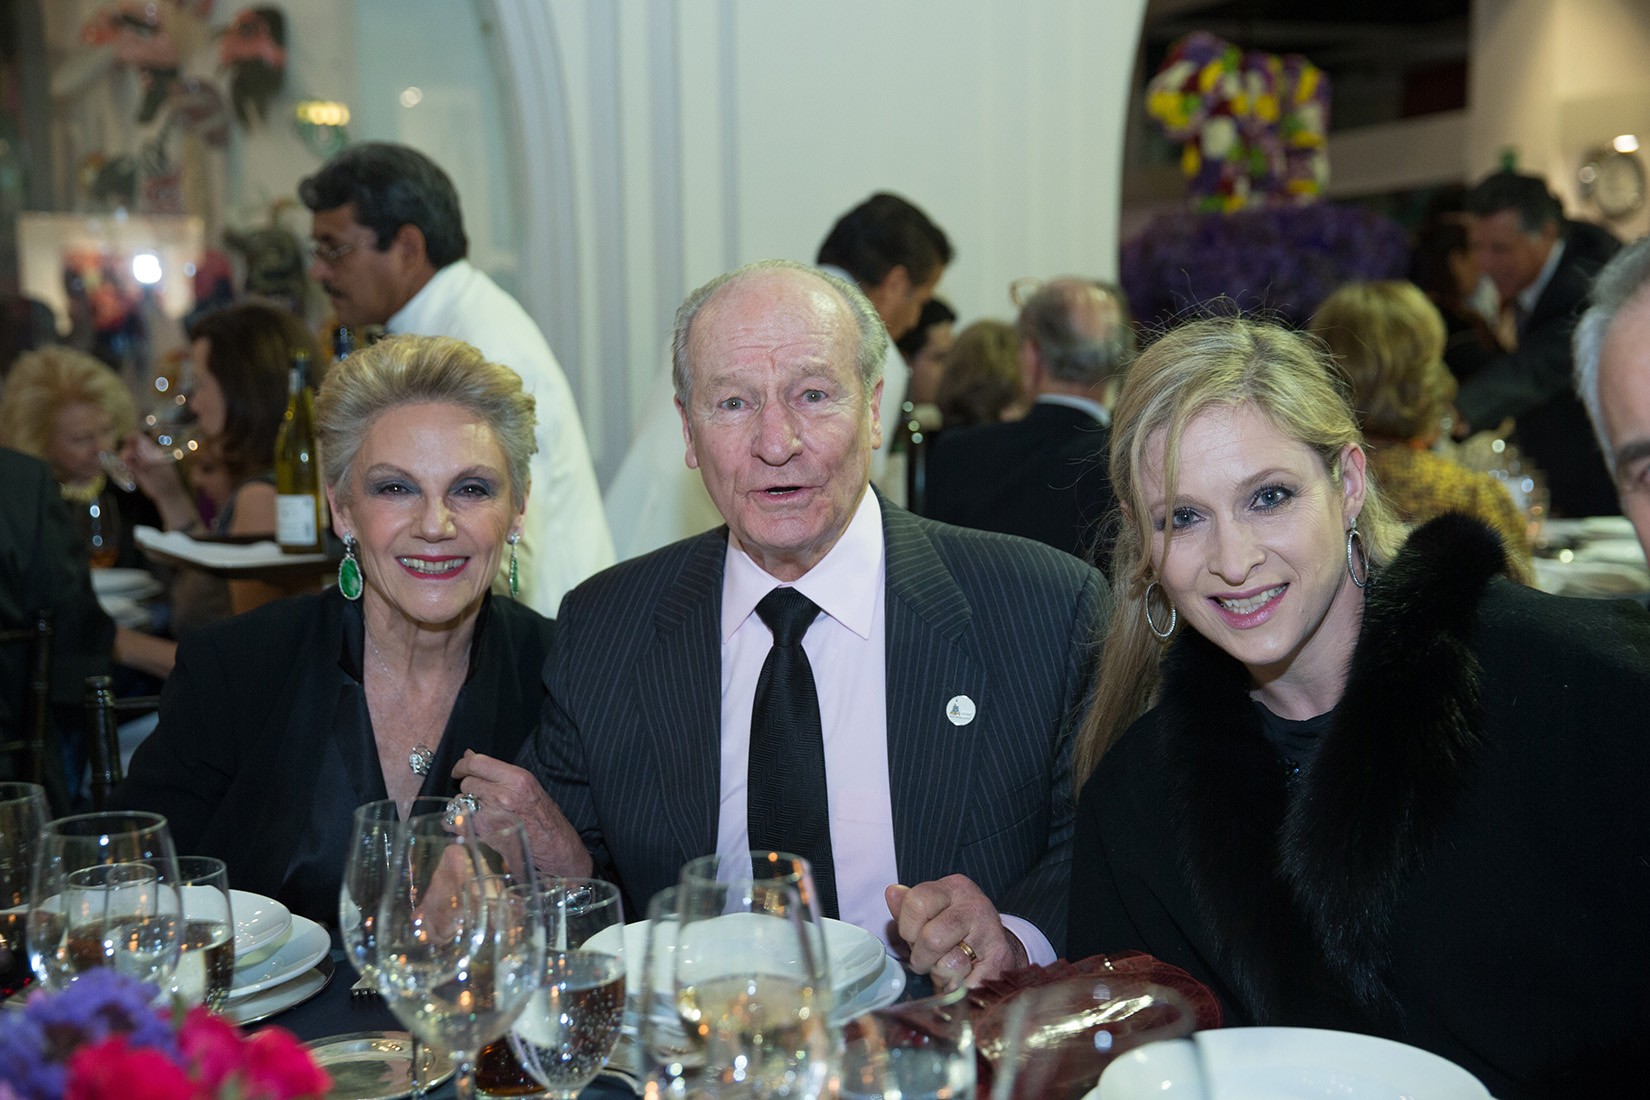 Antonio Cosío, Monchita Cosío y Patricia Gout de caballero en la cena del Décimo Aniversario del MAP.  (Foto: RSVP).